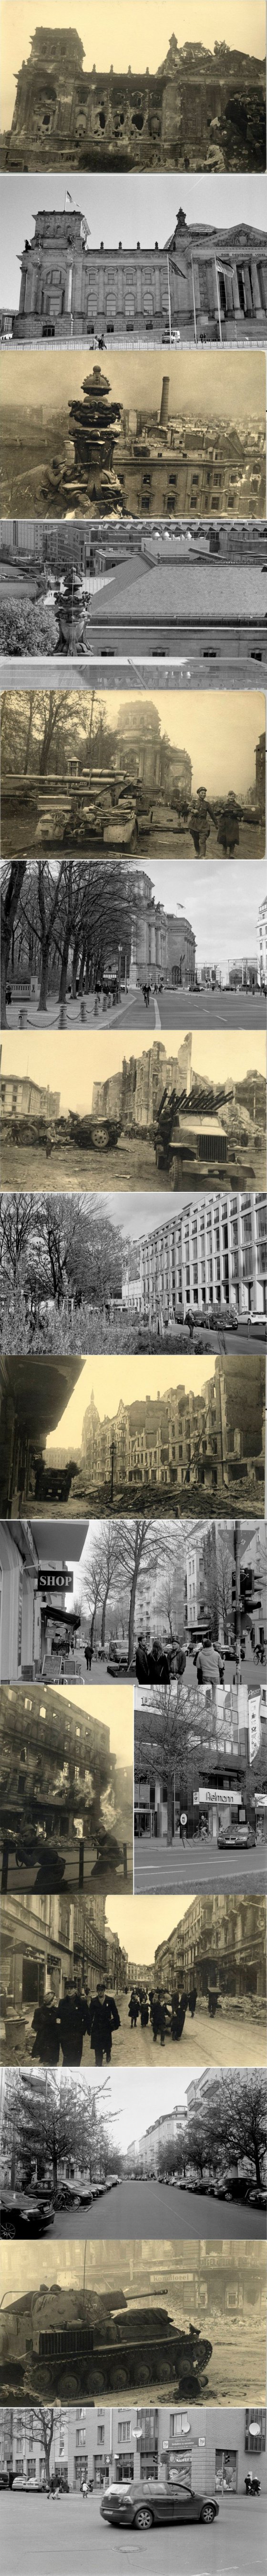 ბერლინი ნანგრევებში 1945 წელს და დღეს-ერთი და იგივე ადგილის ფოტოები